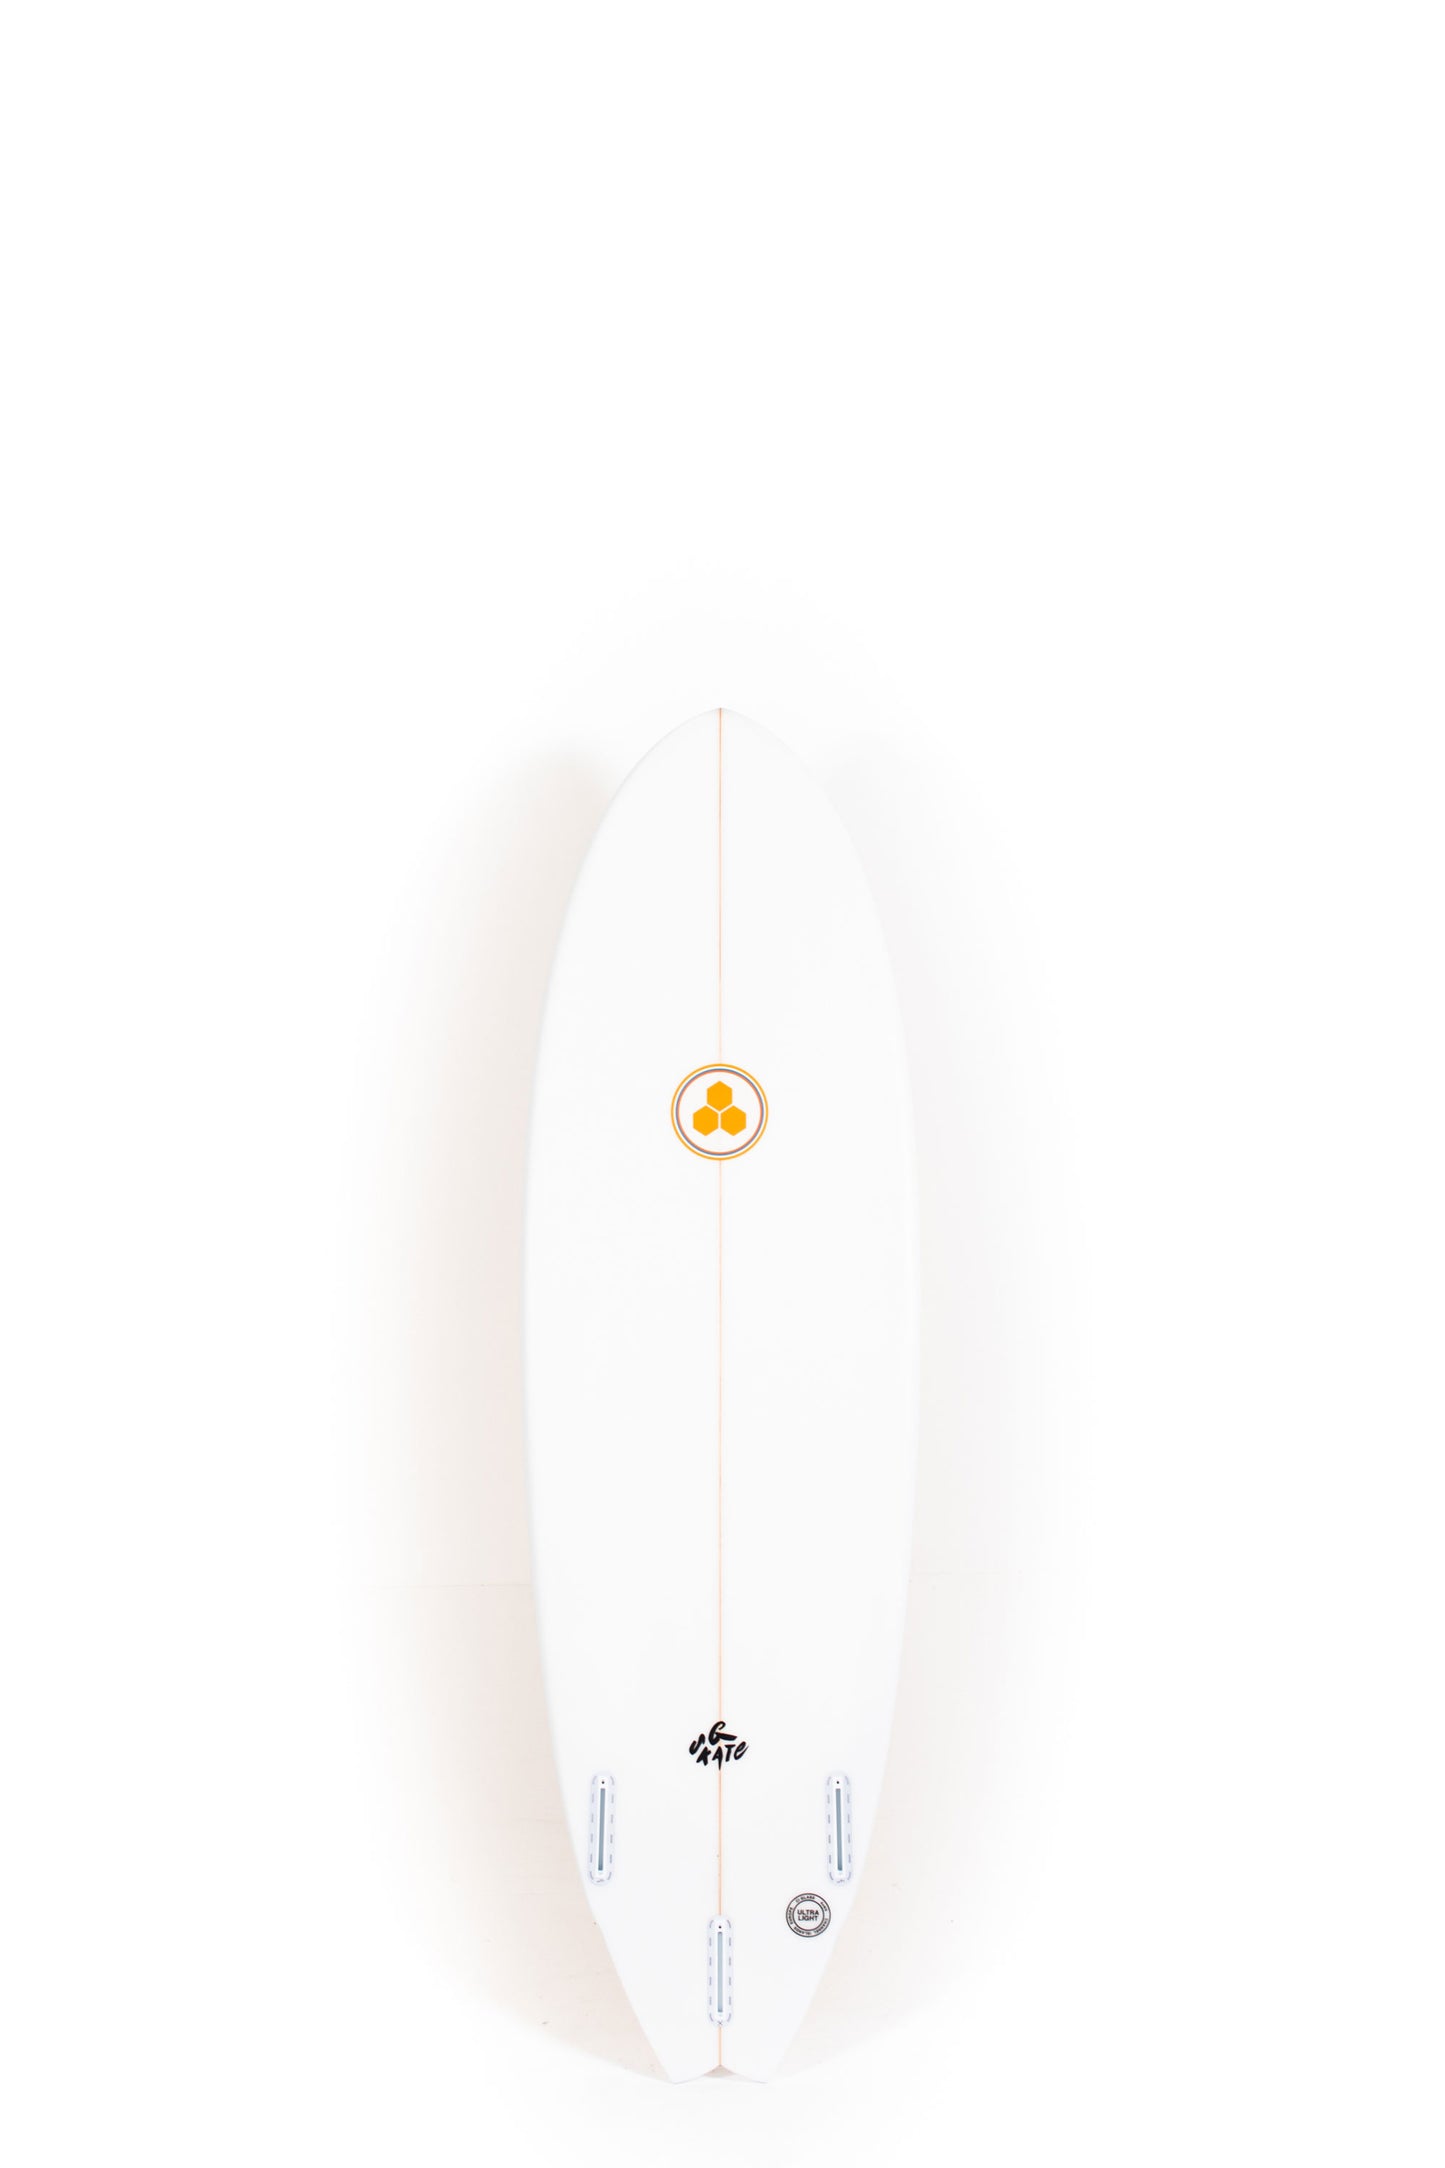 Pukas Surf Shop - Channel Islands - G-Skate by Al Merrick - 6'0" x 20 1/2 x 2 3/4 - 38L - CI28100